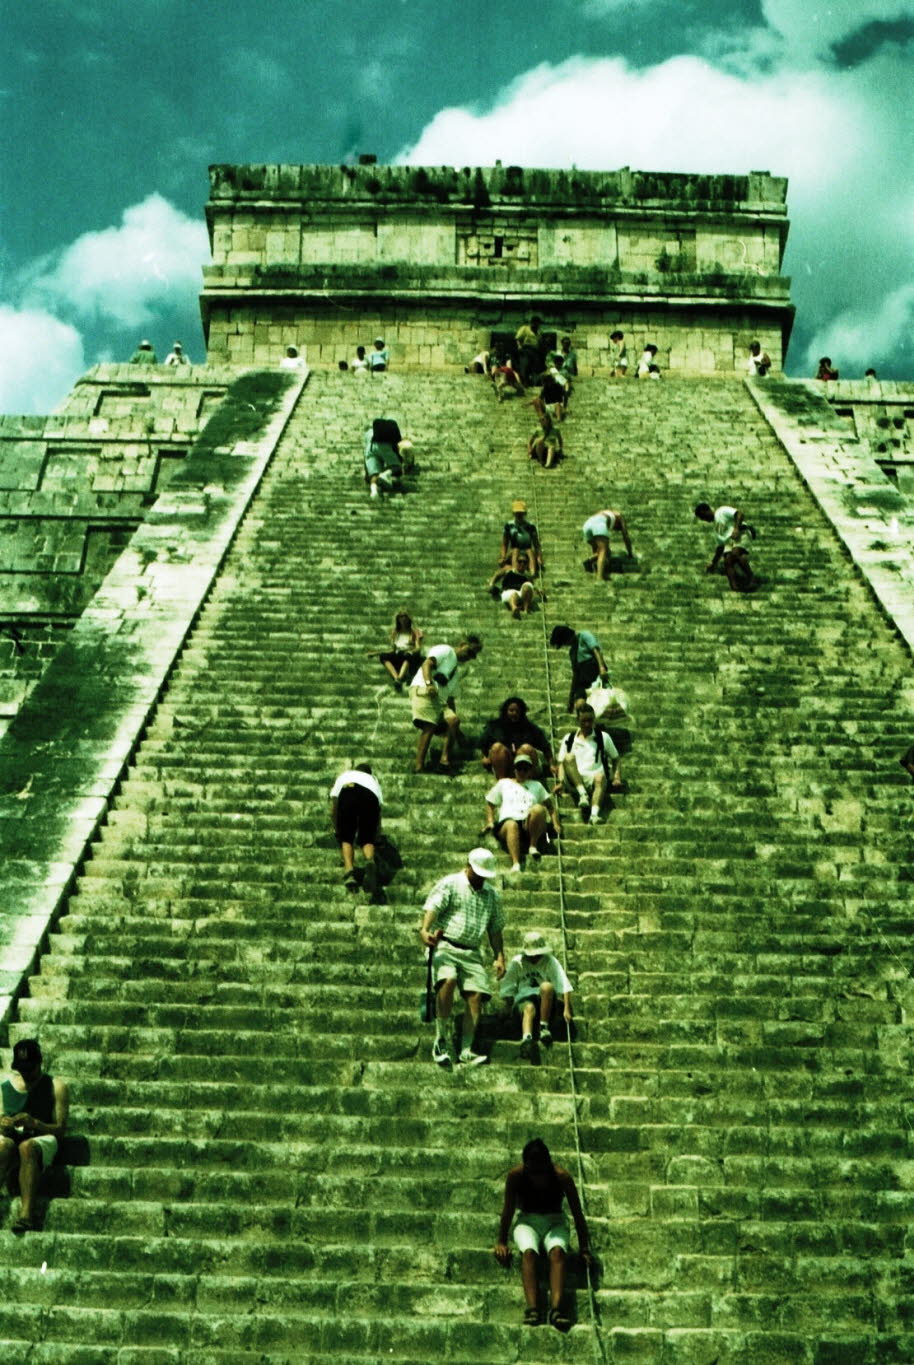 Mexiko Yukatan Chichen Itza: Der Maya-Name "Chichen Itza" bedeutet "An der Mündung des Brunnens der Itza". Dies leitet sich von Chi', was "Mund" oder "Kante" bedeutet, und ch'en oder ch'e'en ab, was "gut" bedeutet. Itza ist der Name einer ethnischen Absta